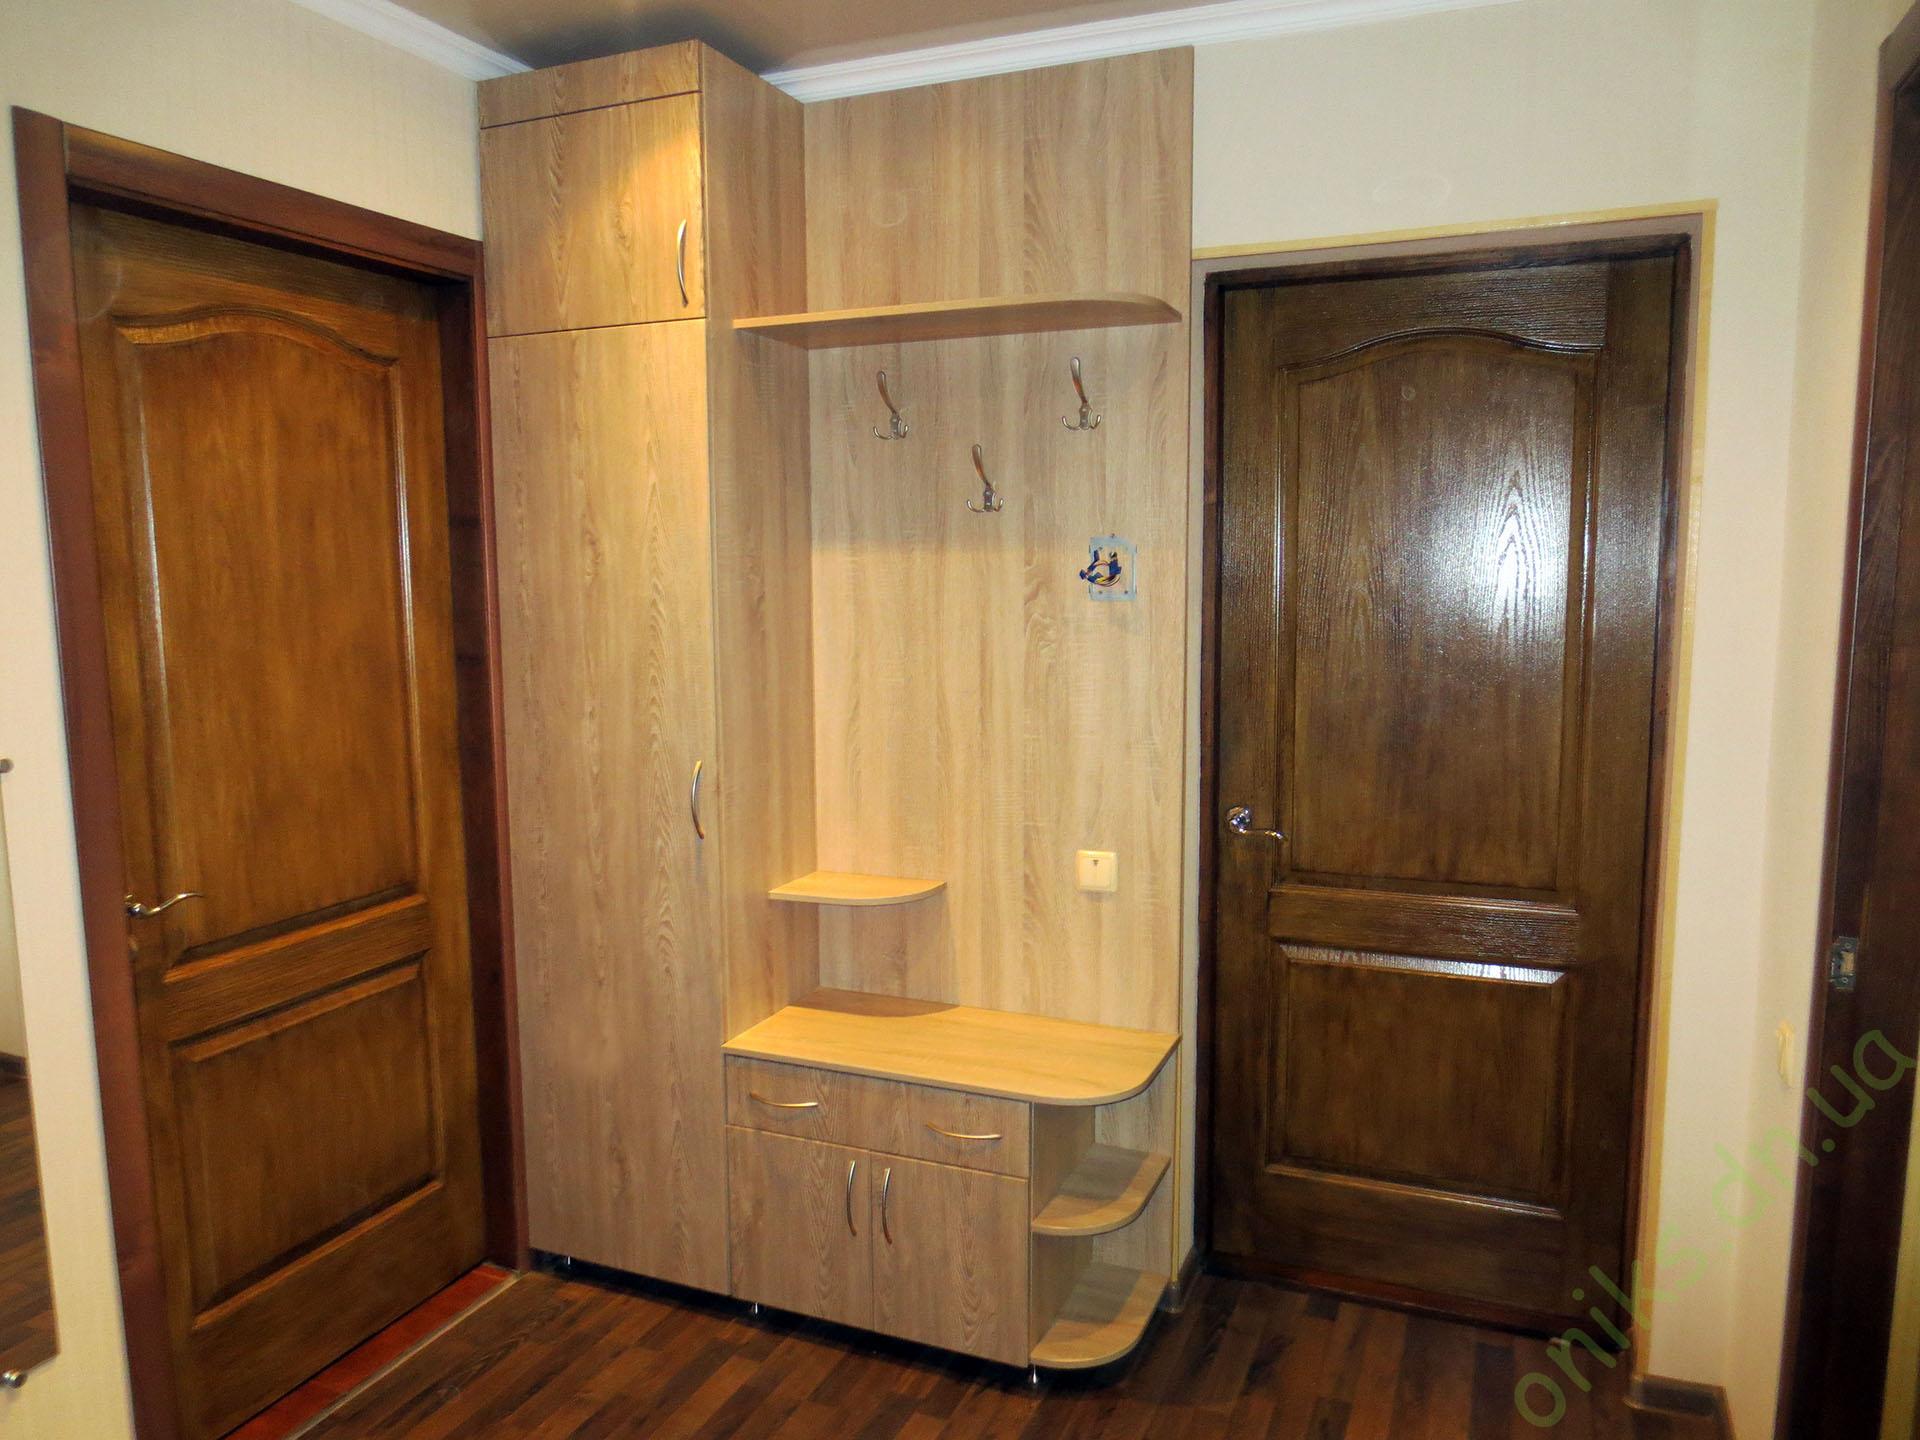 Купить полузакрытый распашной шкаф для прихожей в Донецке